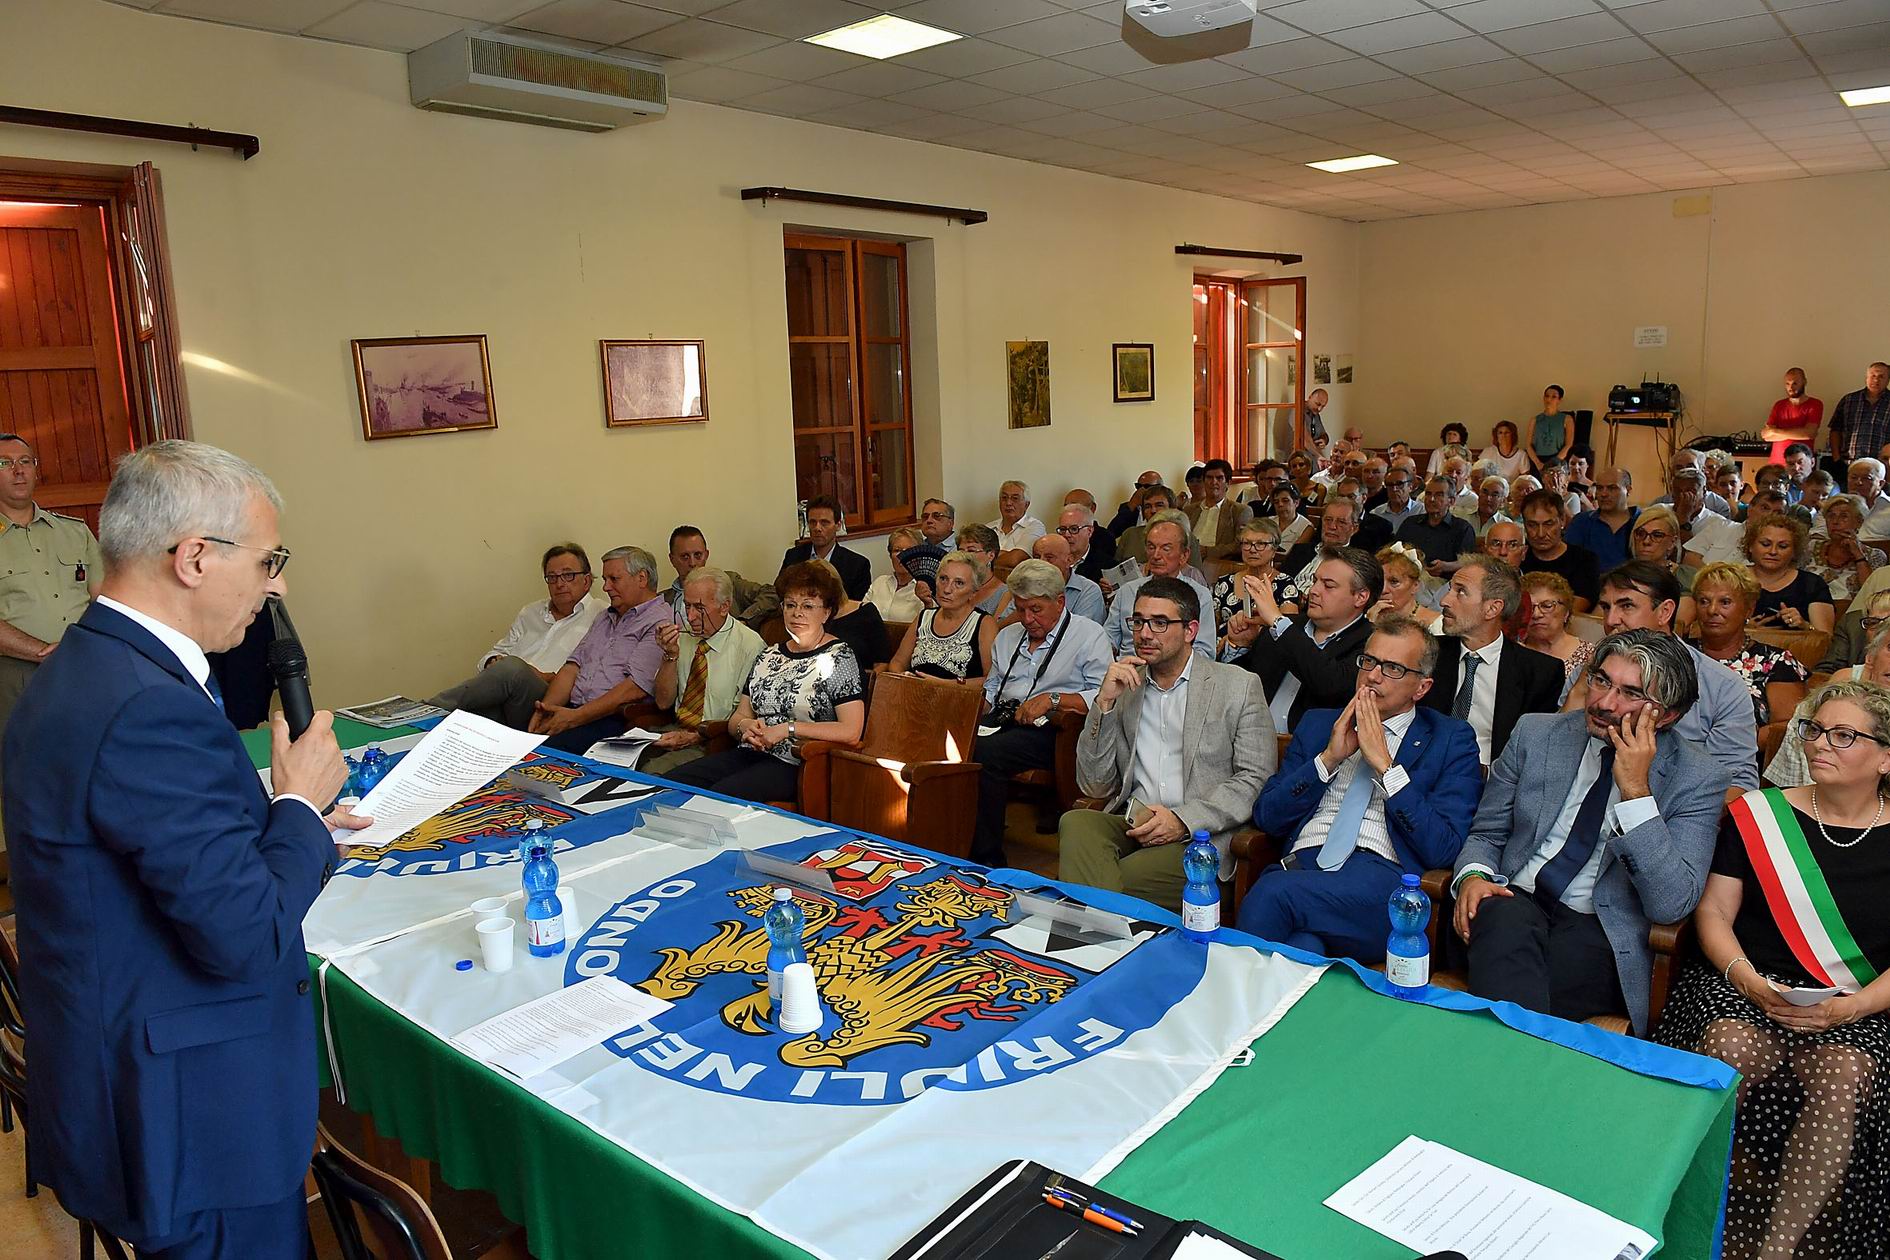 XV Convention e Incontro Annuale dei Friulani nel Mondo (Fogliano Redipuglia, 28 e 29 luglio 2018)